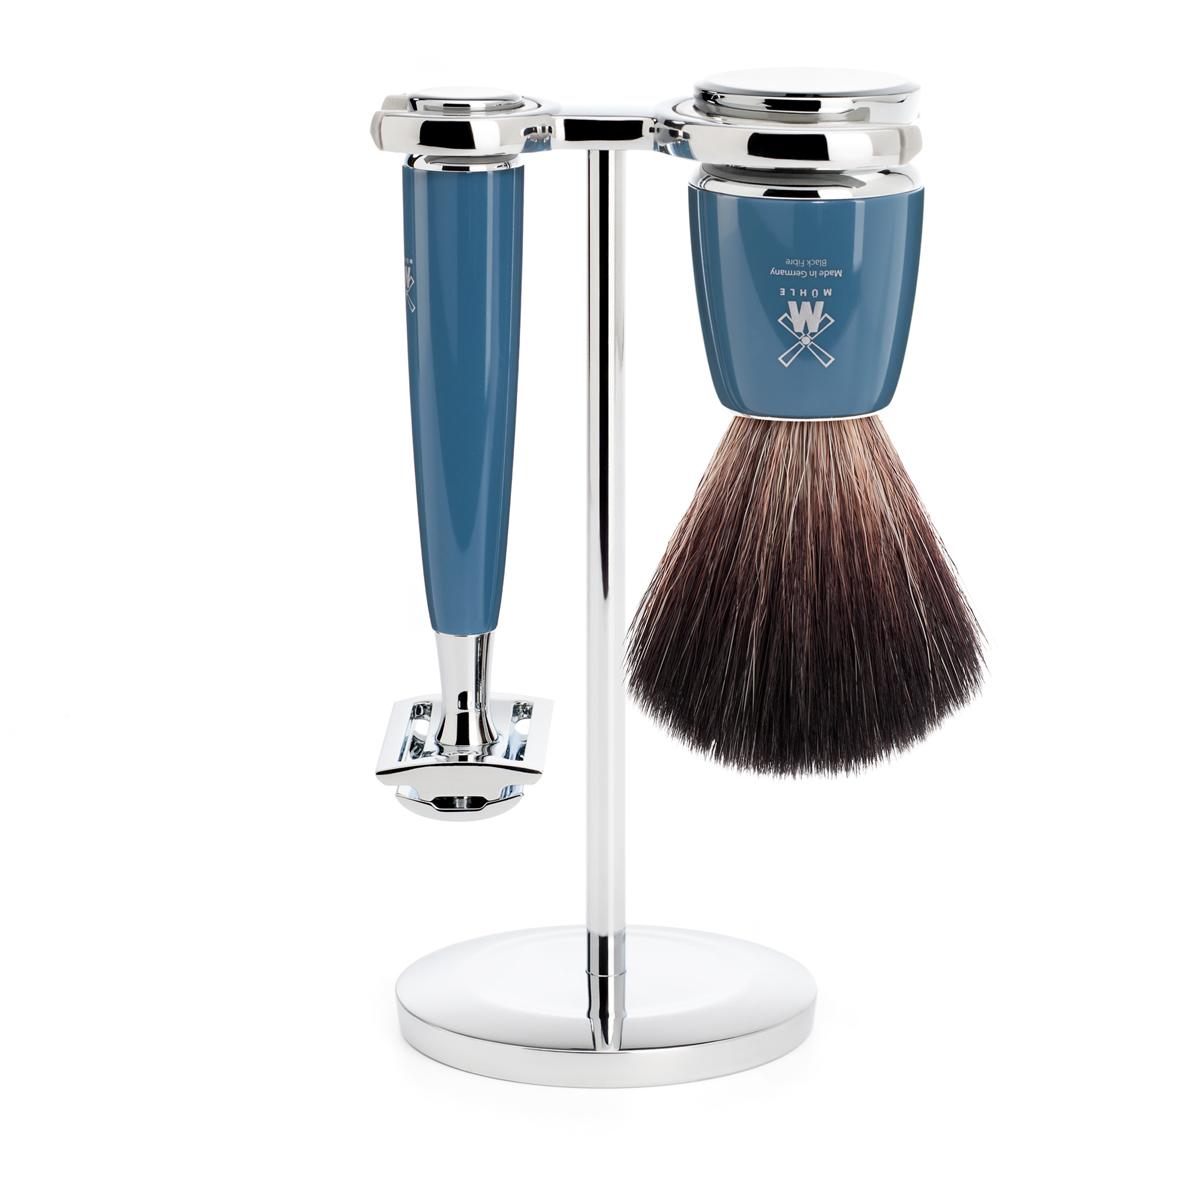 Mühle rytmo azul petróleo 3ud. set de afeitado fibra negra / maquinilla de afeitar de seguridad